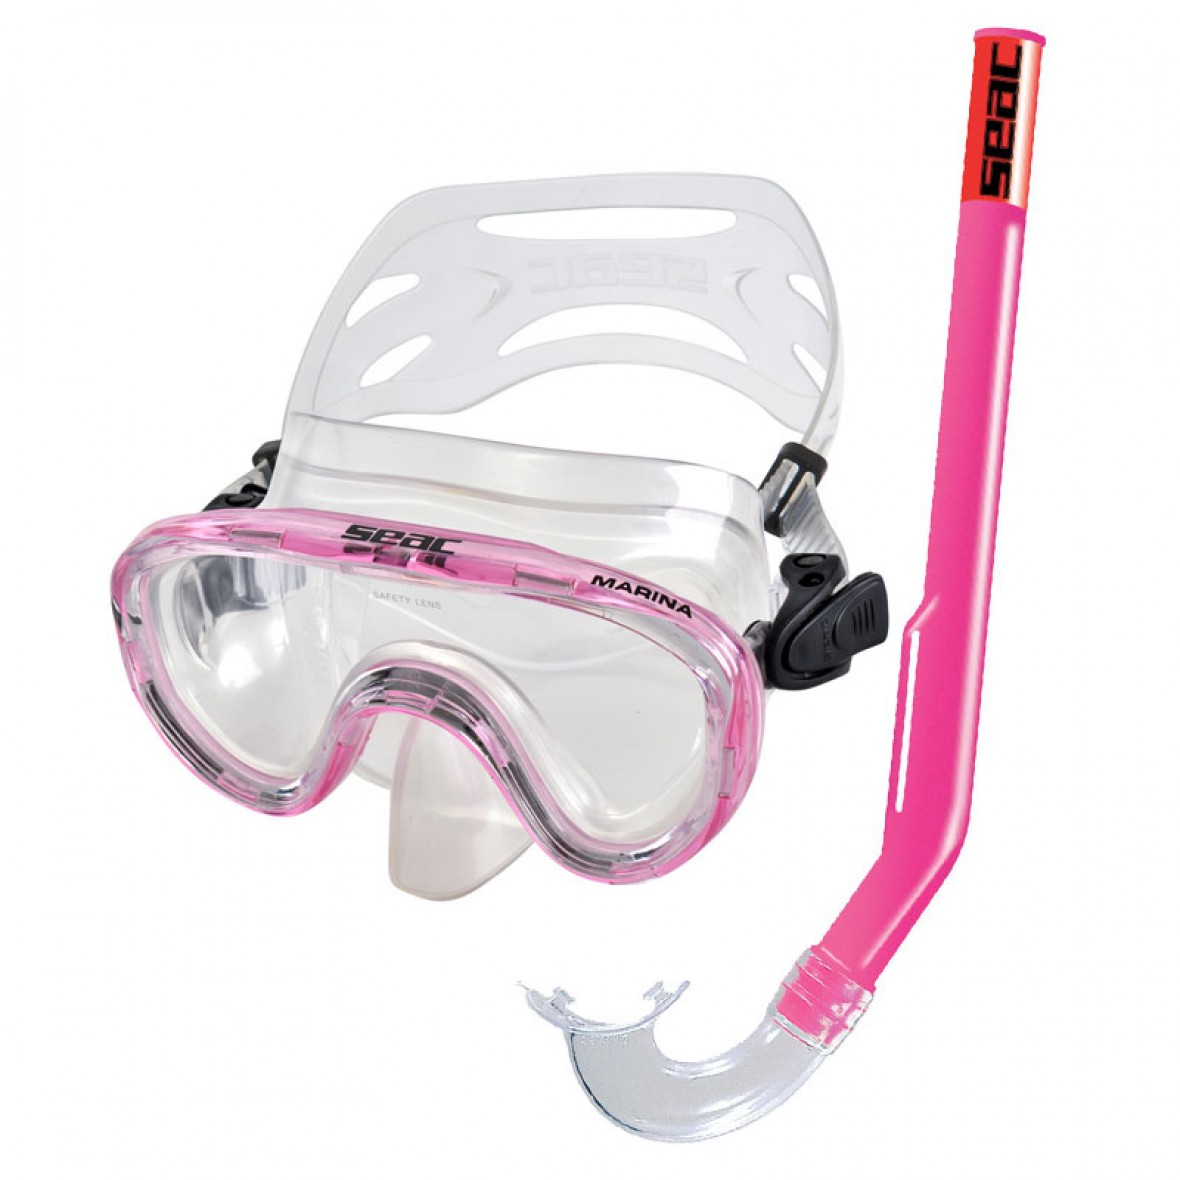 con maschera subacquea e tubo per snorkeling vetro temperato 5-10 anni cinturino in silicone regolabile Maschera da snorkeling per bambini e ragazzi 